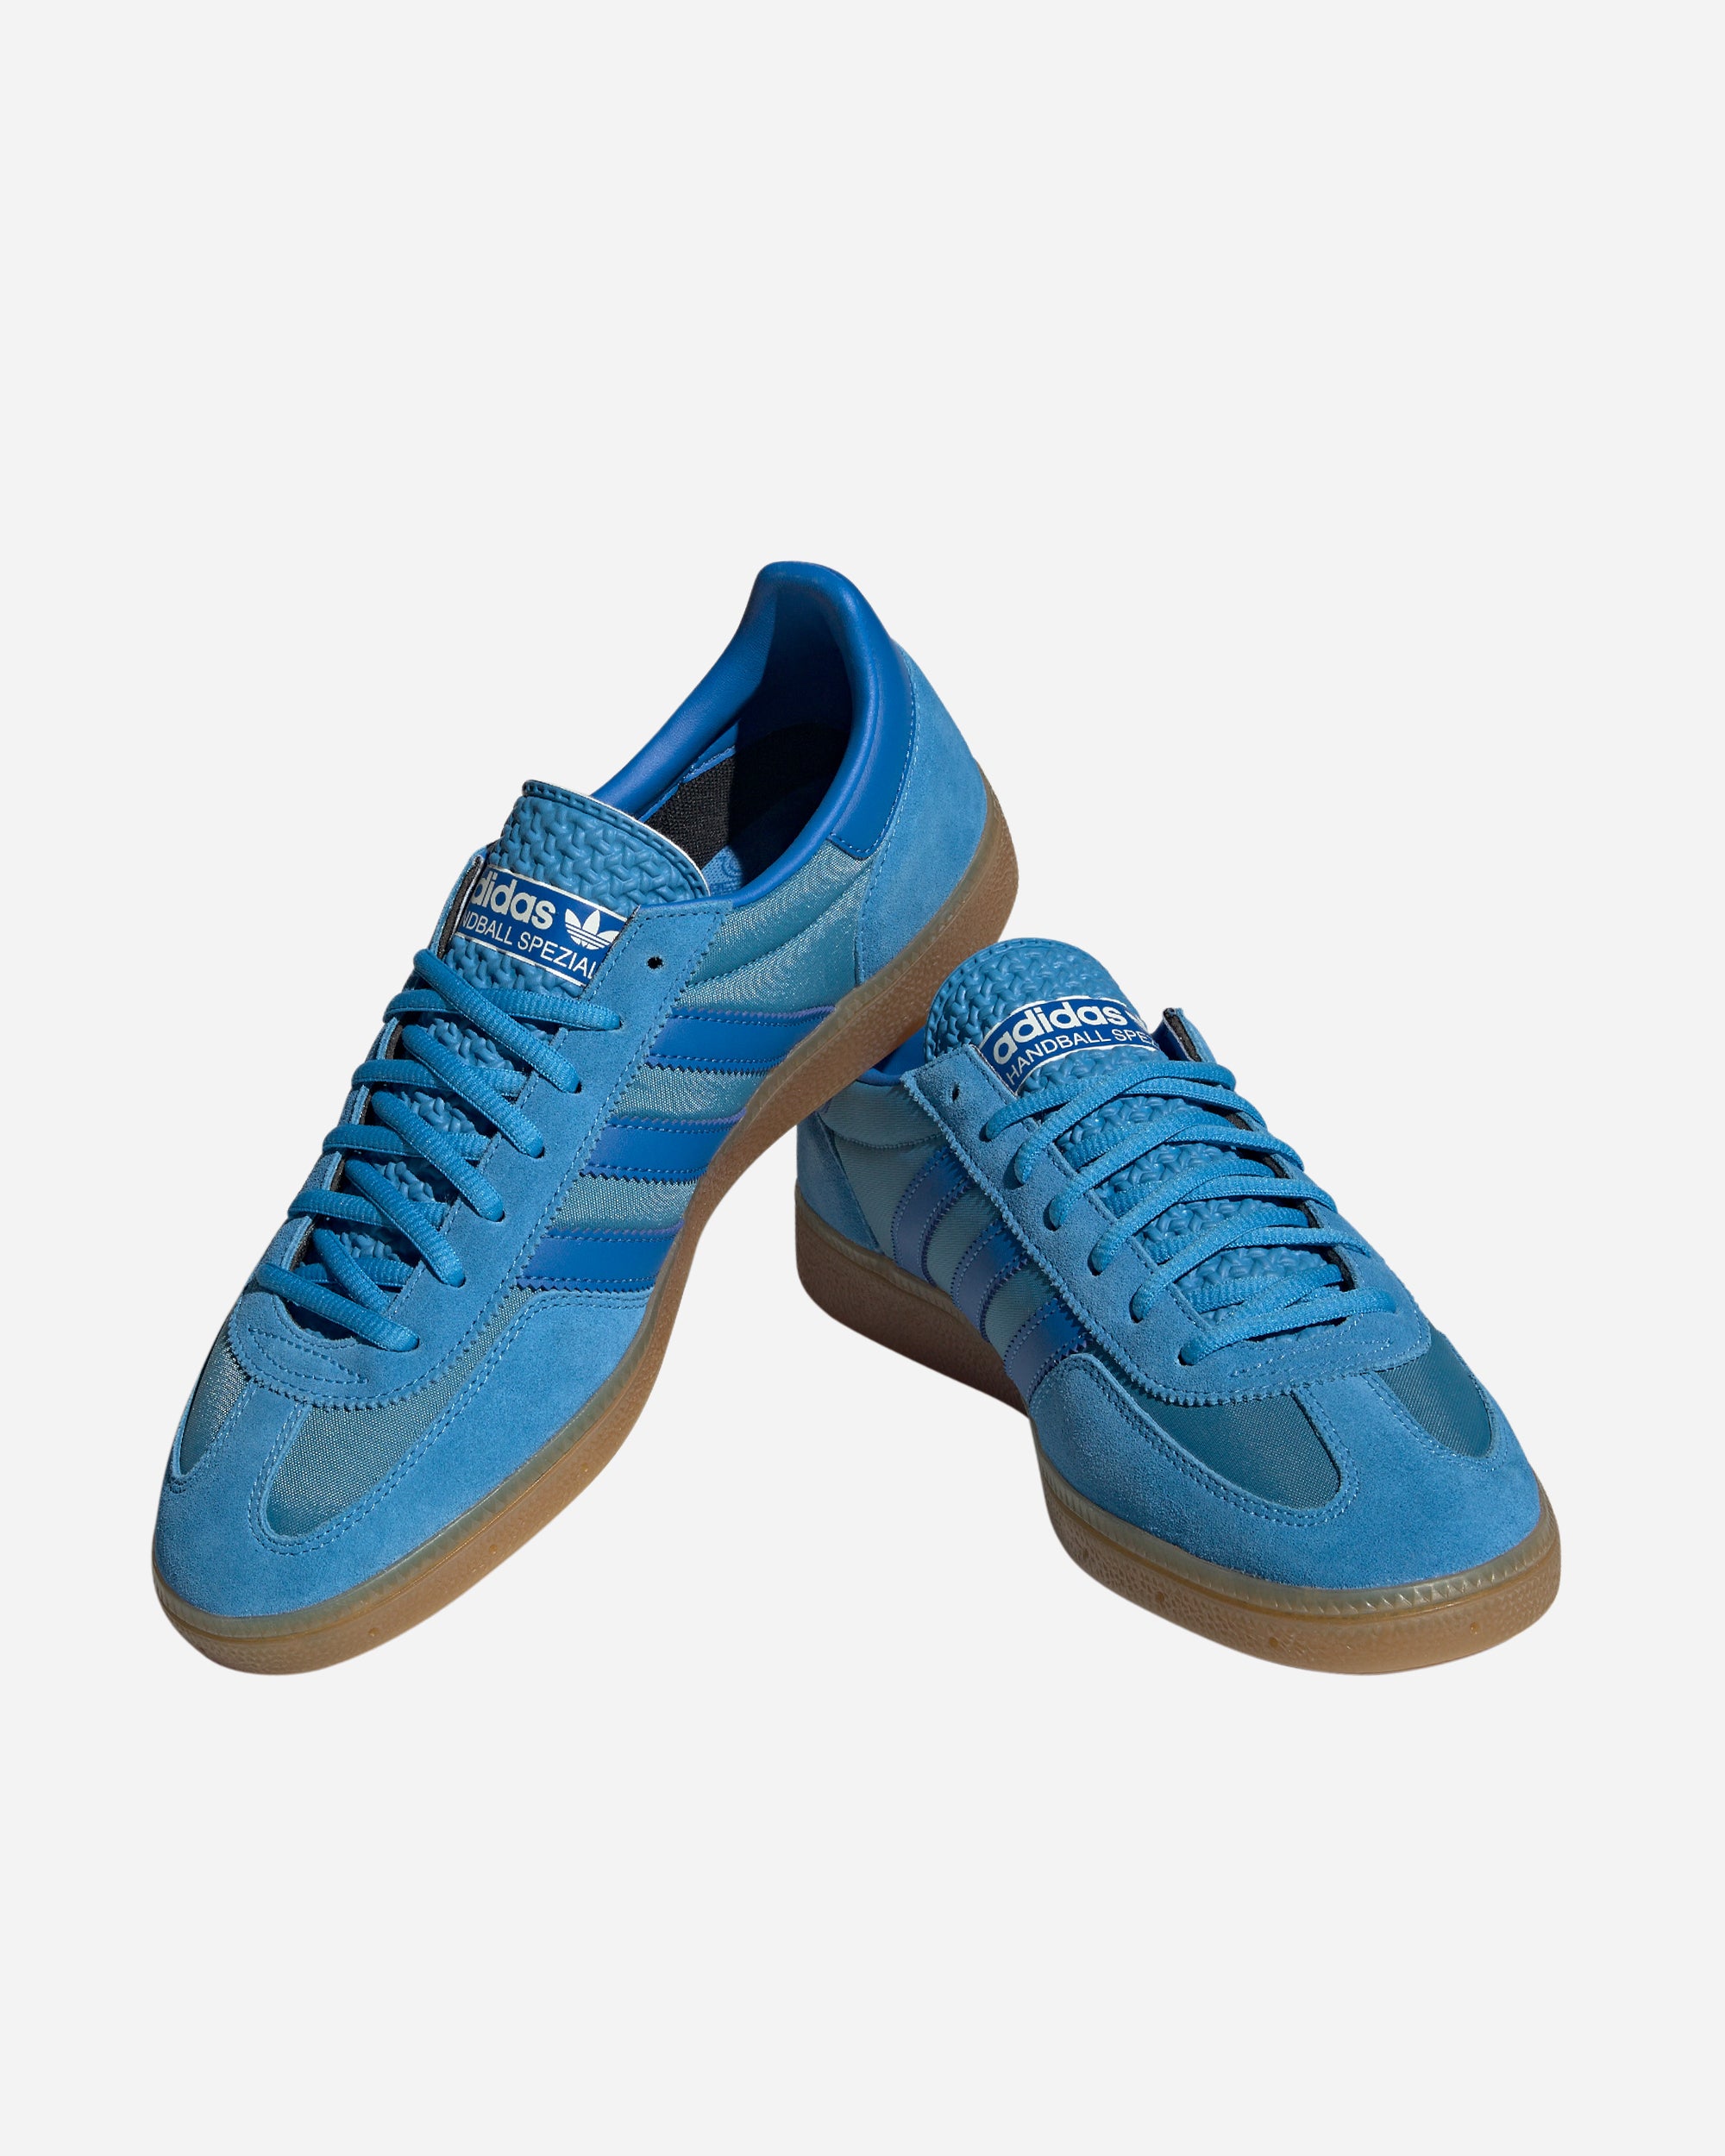 adidas Originals Handball Spezial pulse blue GY7408